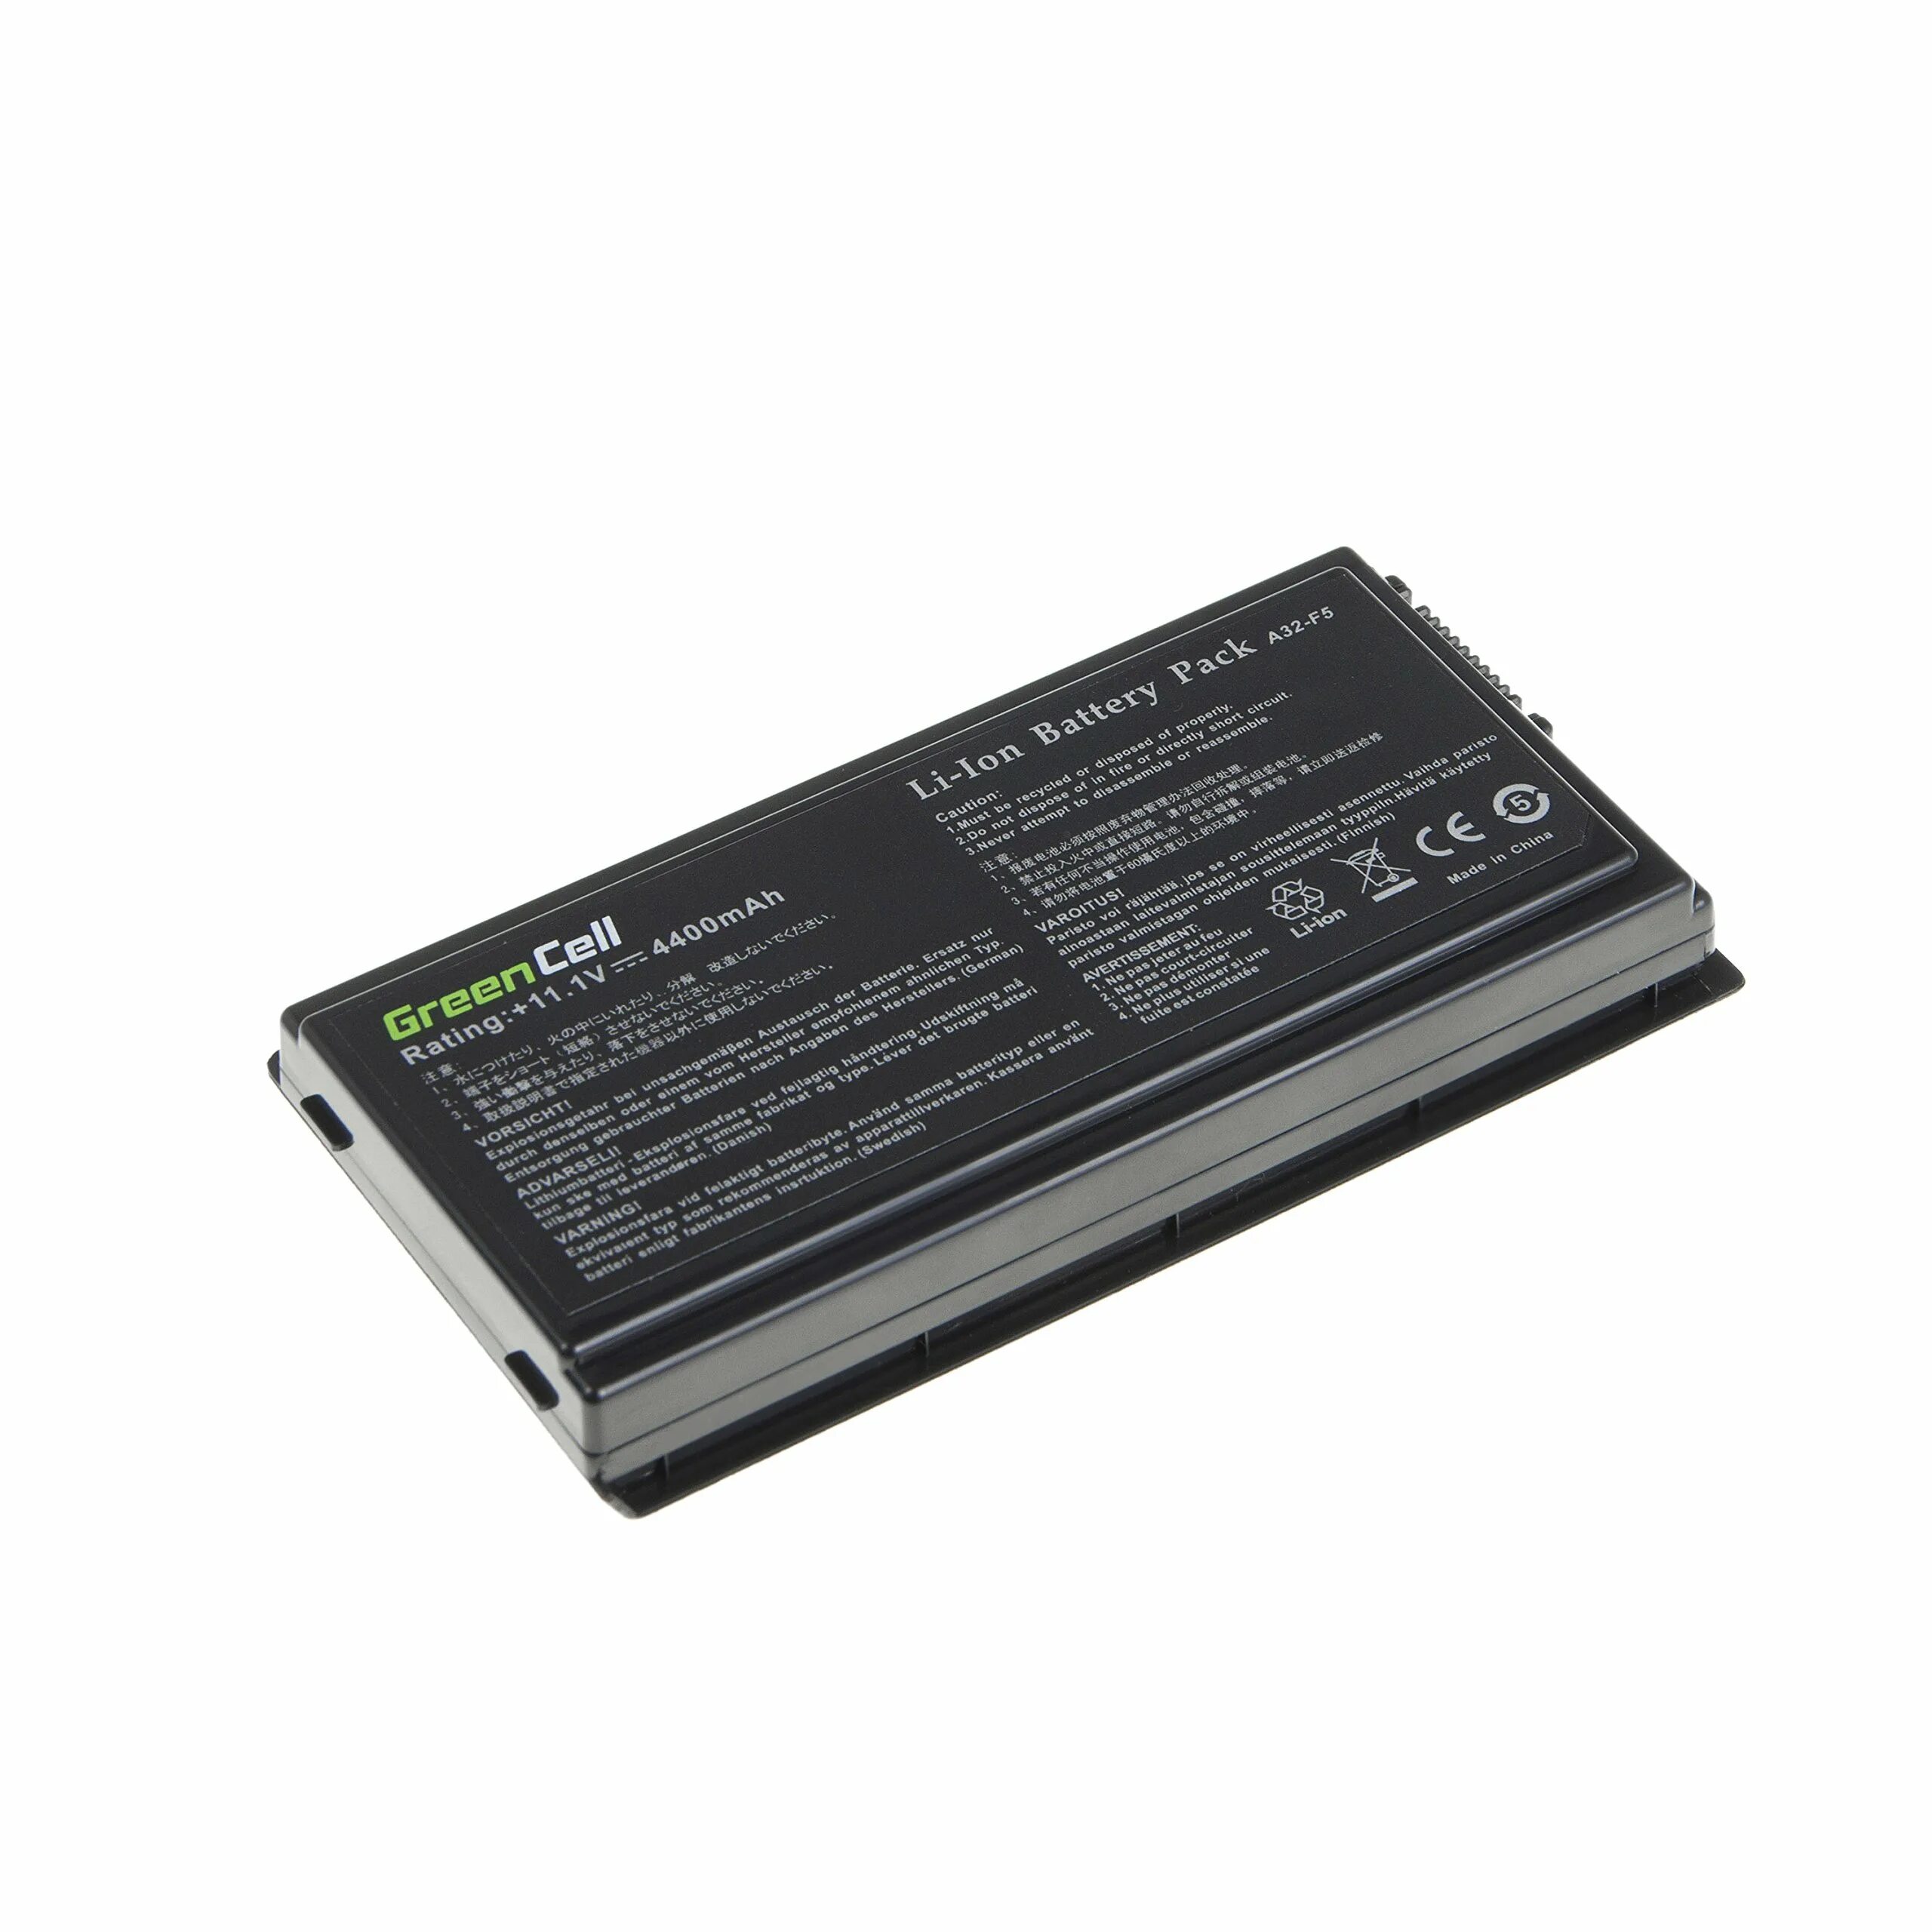 Battery a32. А32-f5 аккумулятор для ноутбука асус. A32-f5. Батарея с 75. Батарейка u4400 для ноутбука.